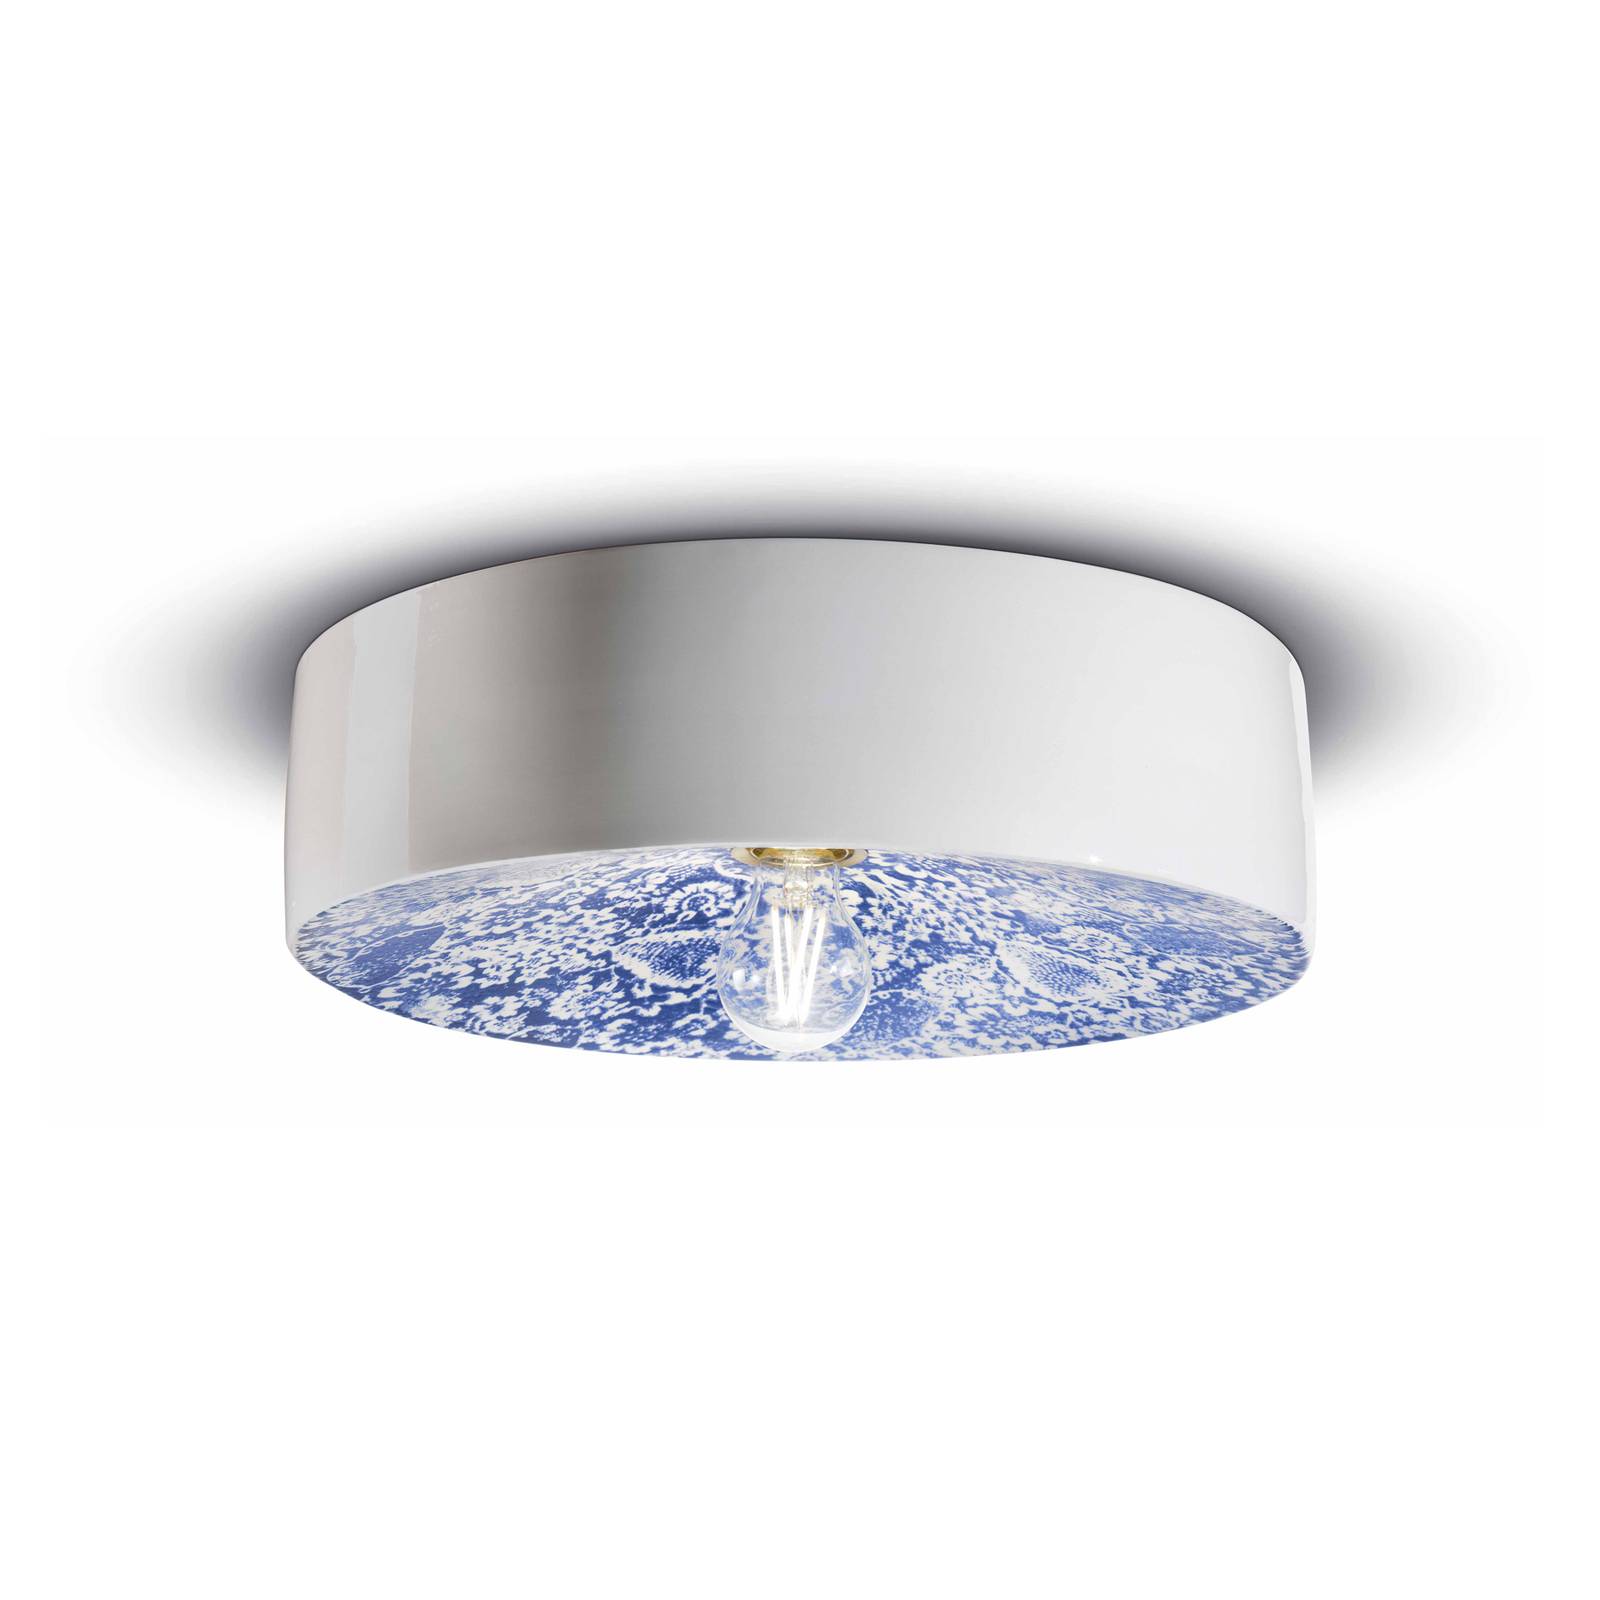 E-shop PI stropné svietidlo, kvetinový vzor, Ø 40 cm modrá/biela